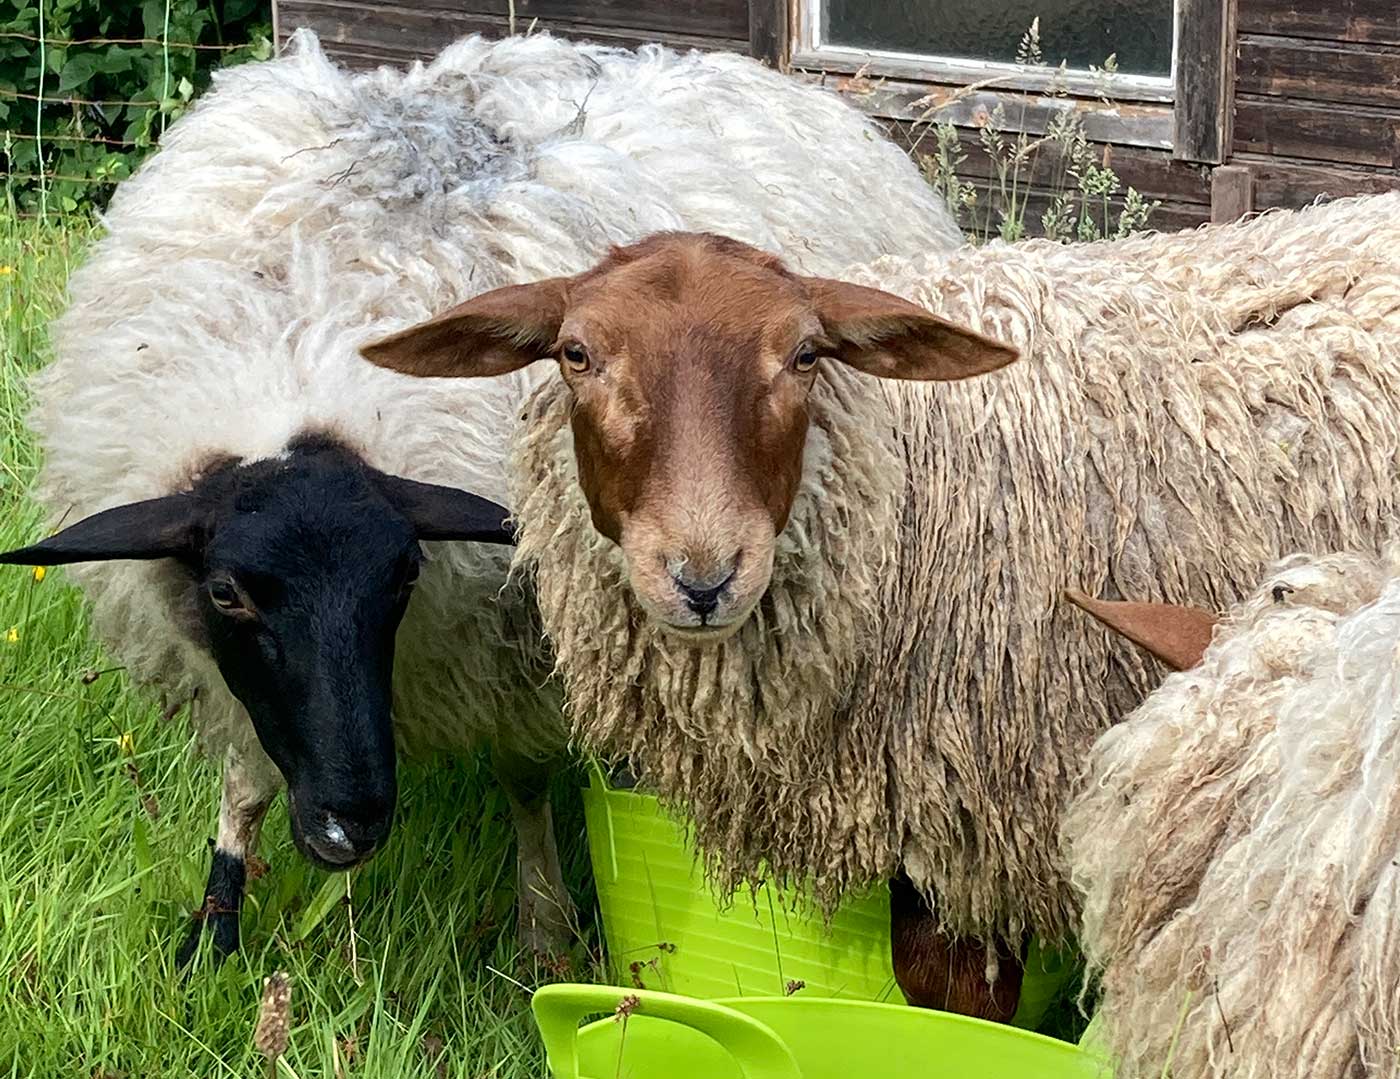 Schafe - ein Schaf mit braunem Kopf schaut Betrachter an, eins mit schwarzem Kopf nach unten zum Gras gebeugt